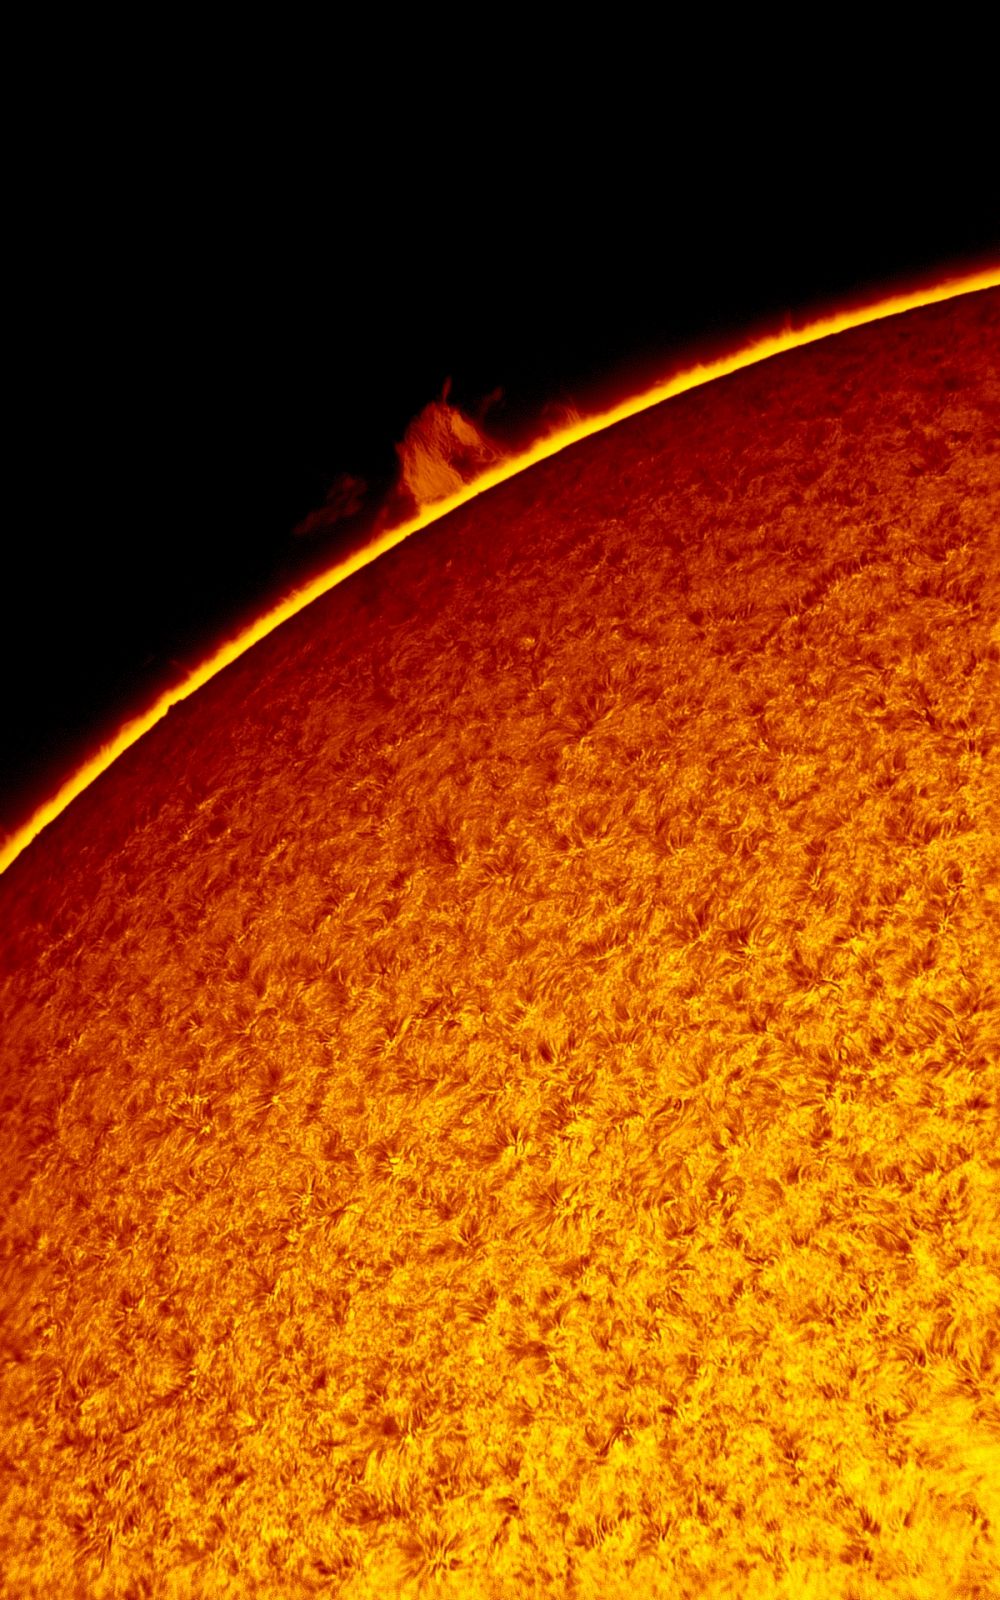 2017.05.06 Sun H-Alpha horsehead prominence